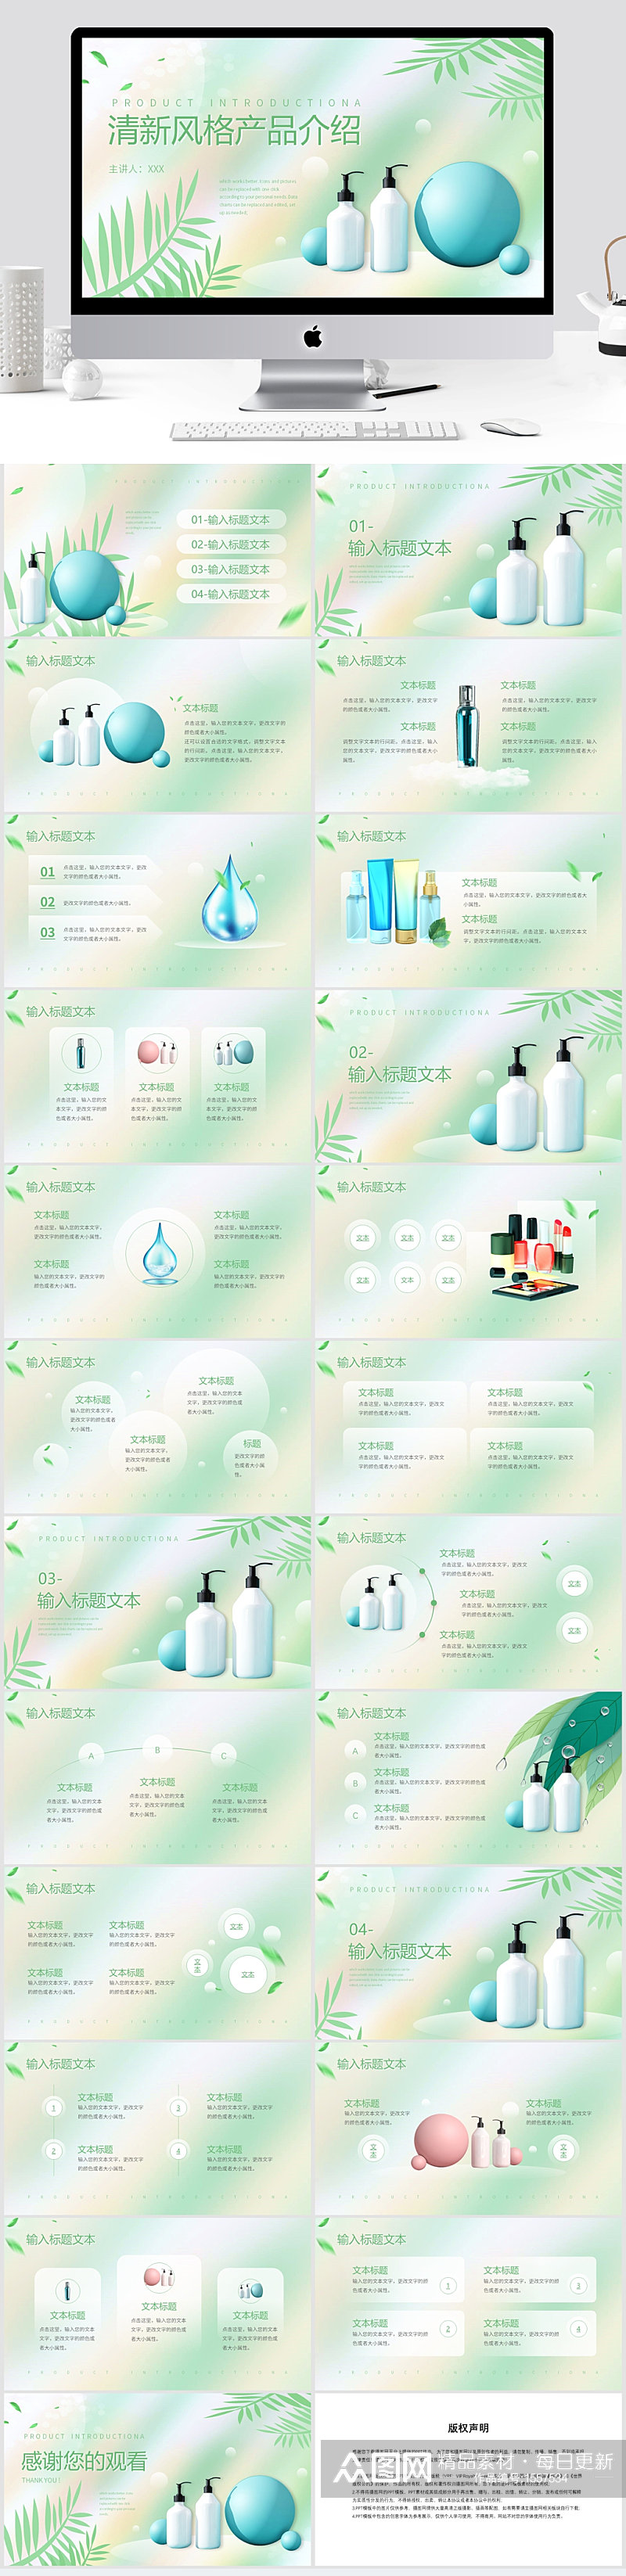 绿色清新产品宣传介绍PPT模板素材